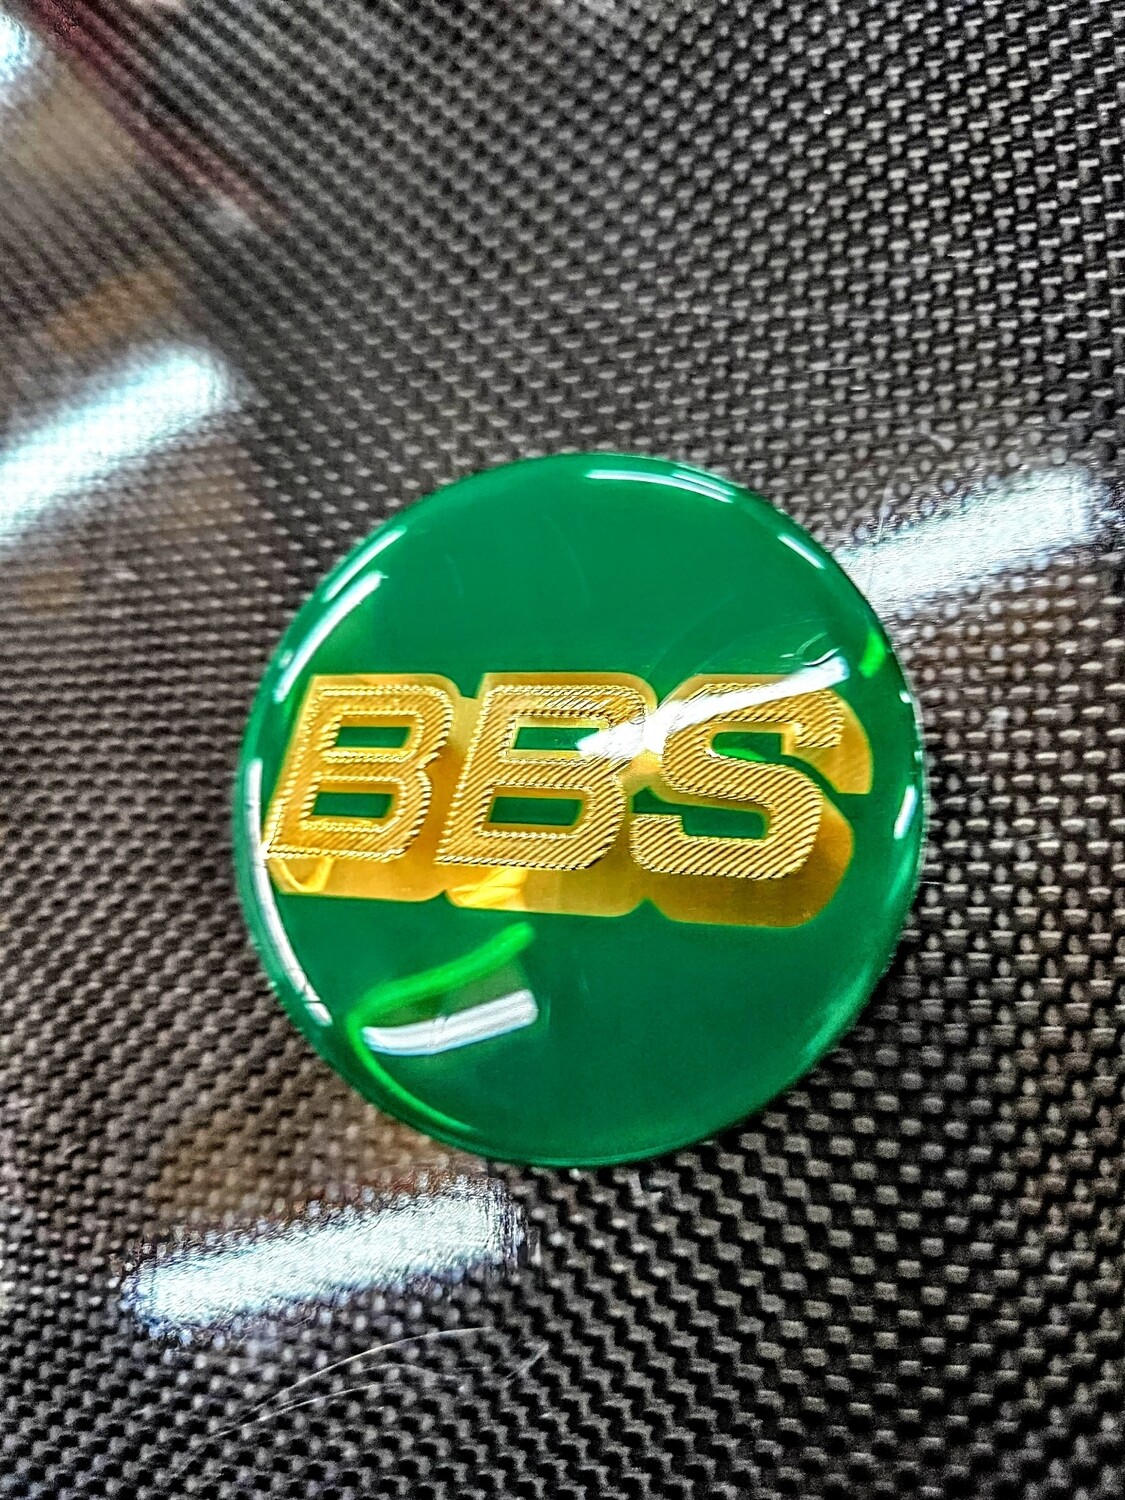 Green/Gold 70MM BBS center cap